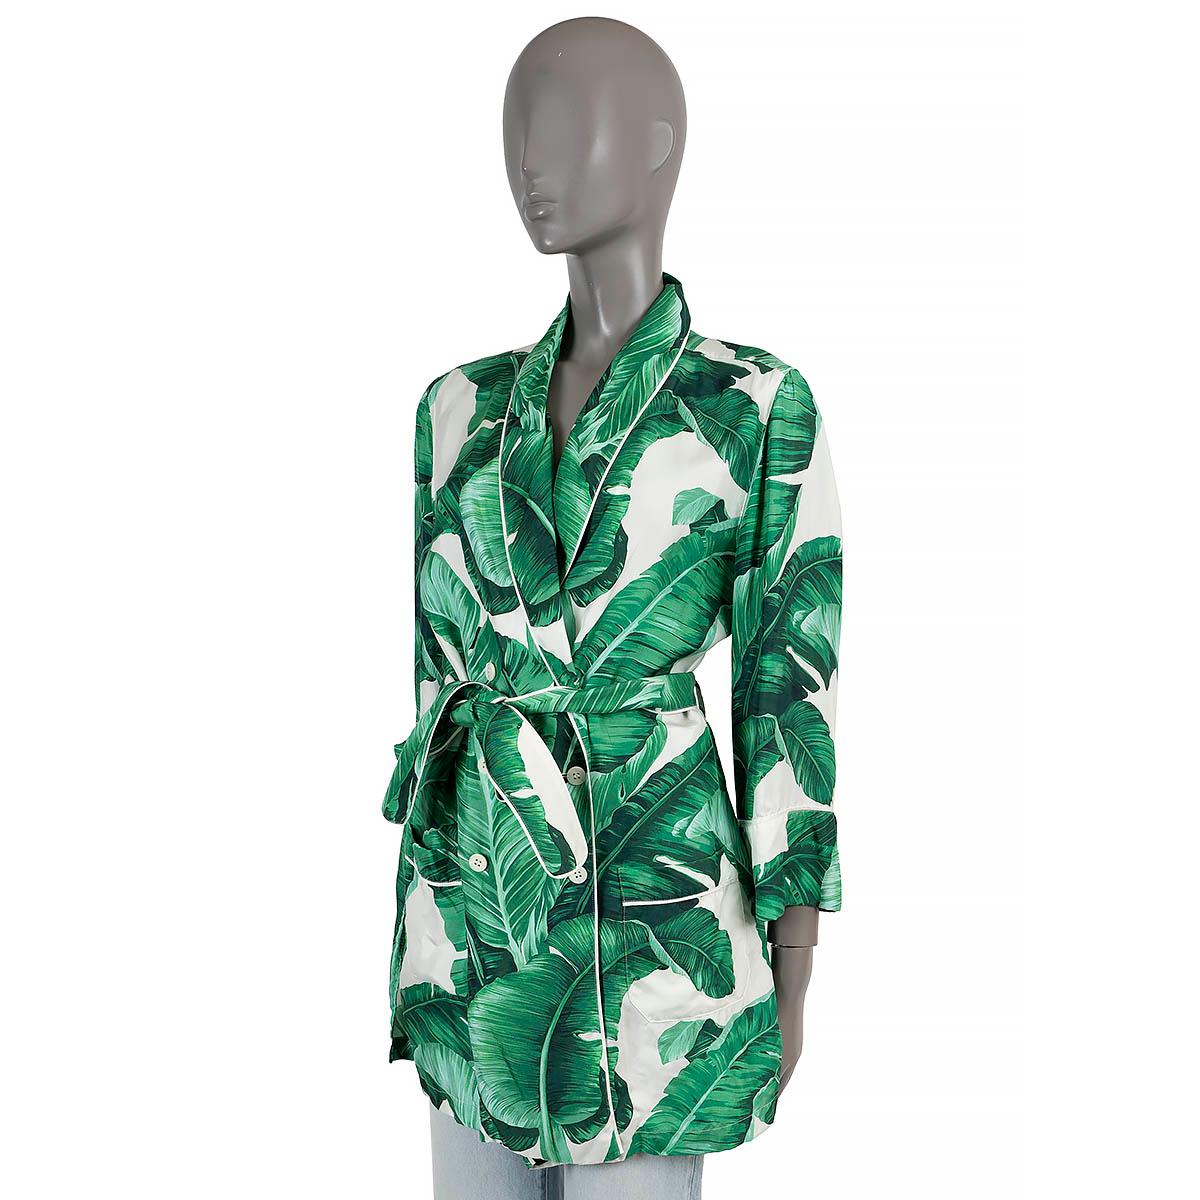 100% authentique Dolce & Gabbana veste ceinturée à double boutonnage en soie verte et blanche (veuillez noter que l'étiquette de contenu est manquante), avec imprimé de feuilles de bananier. Il est doté d'un col en cuir et de deux poches plaquées.